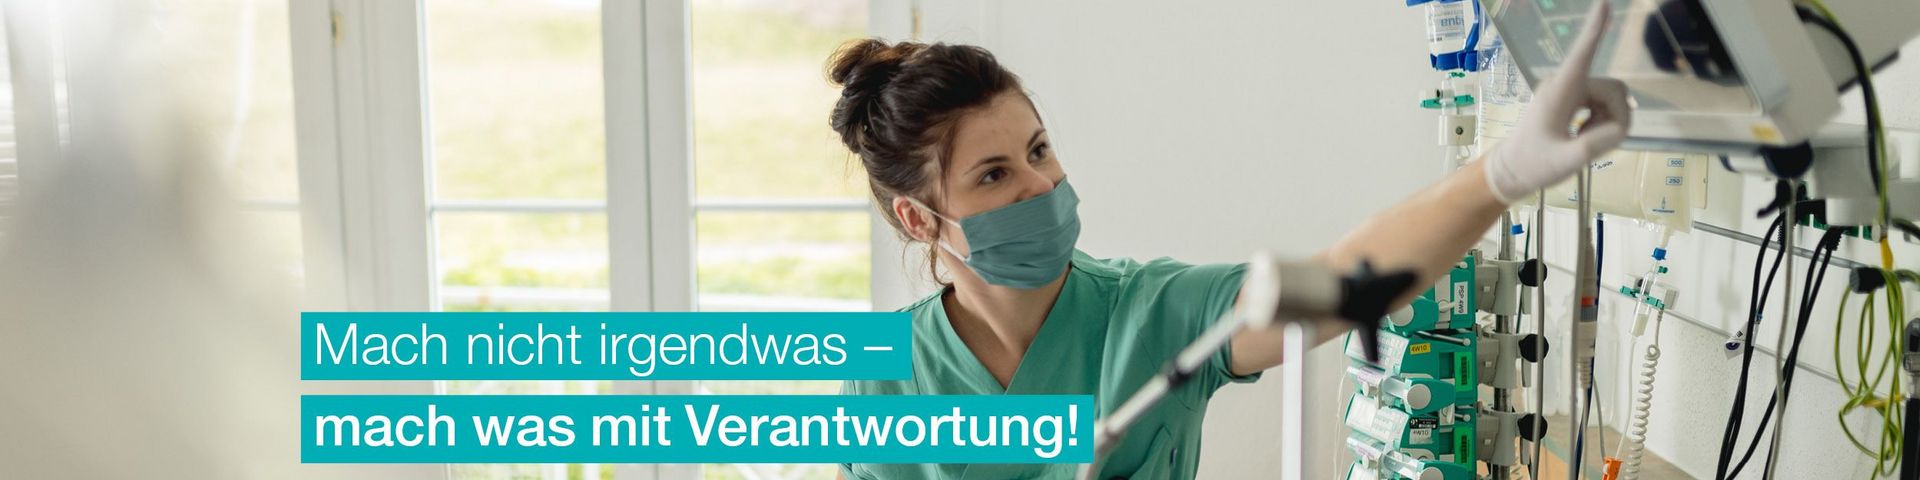 Klinik-Bavaria-zukunftbraucht-Verantwortung-Grafik_2500px